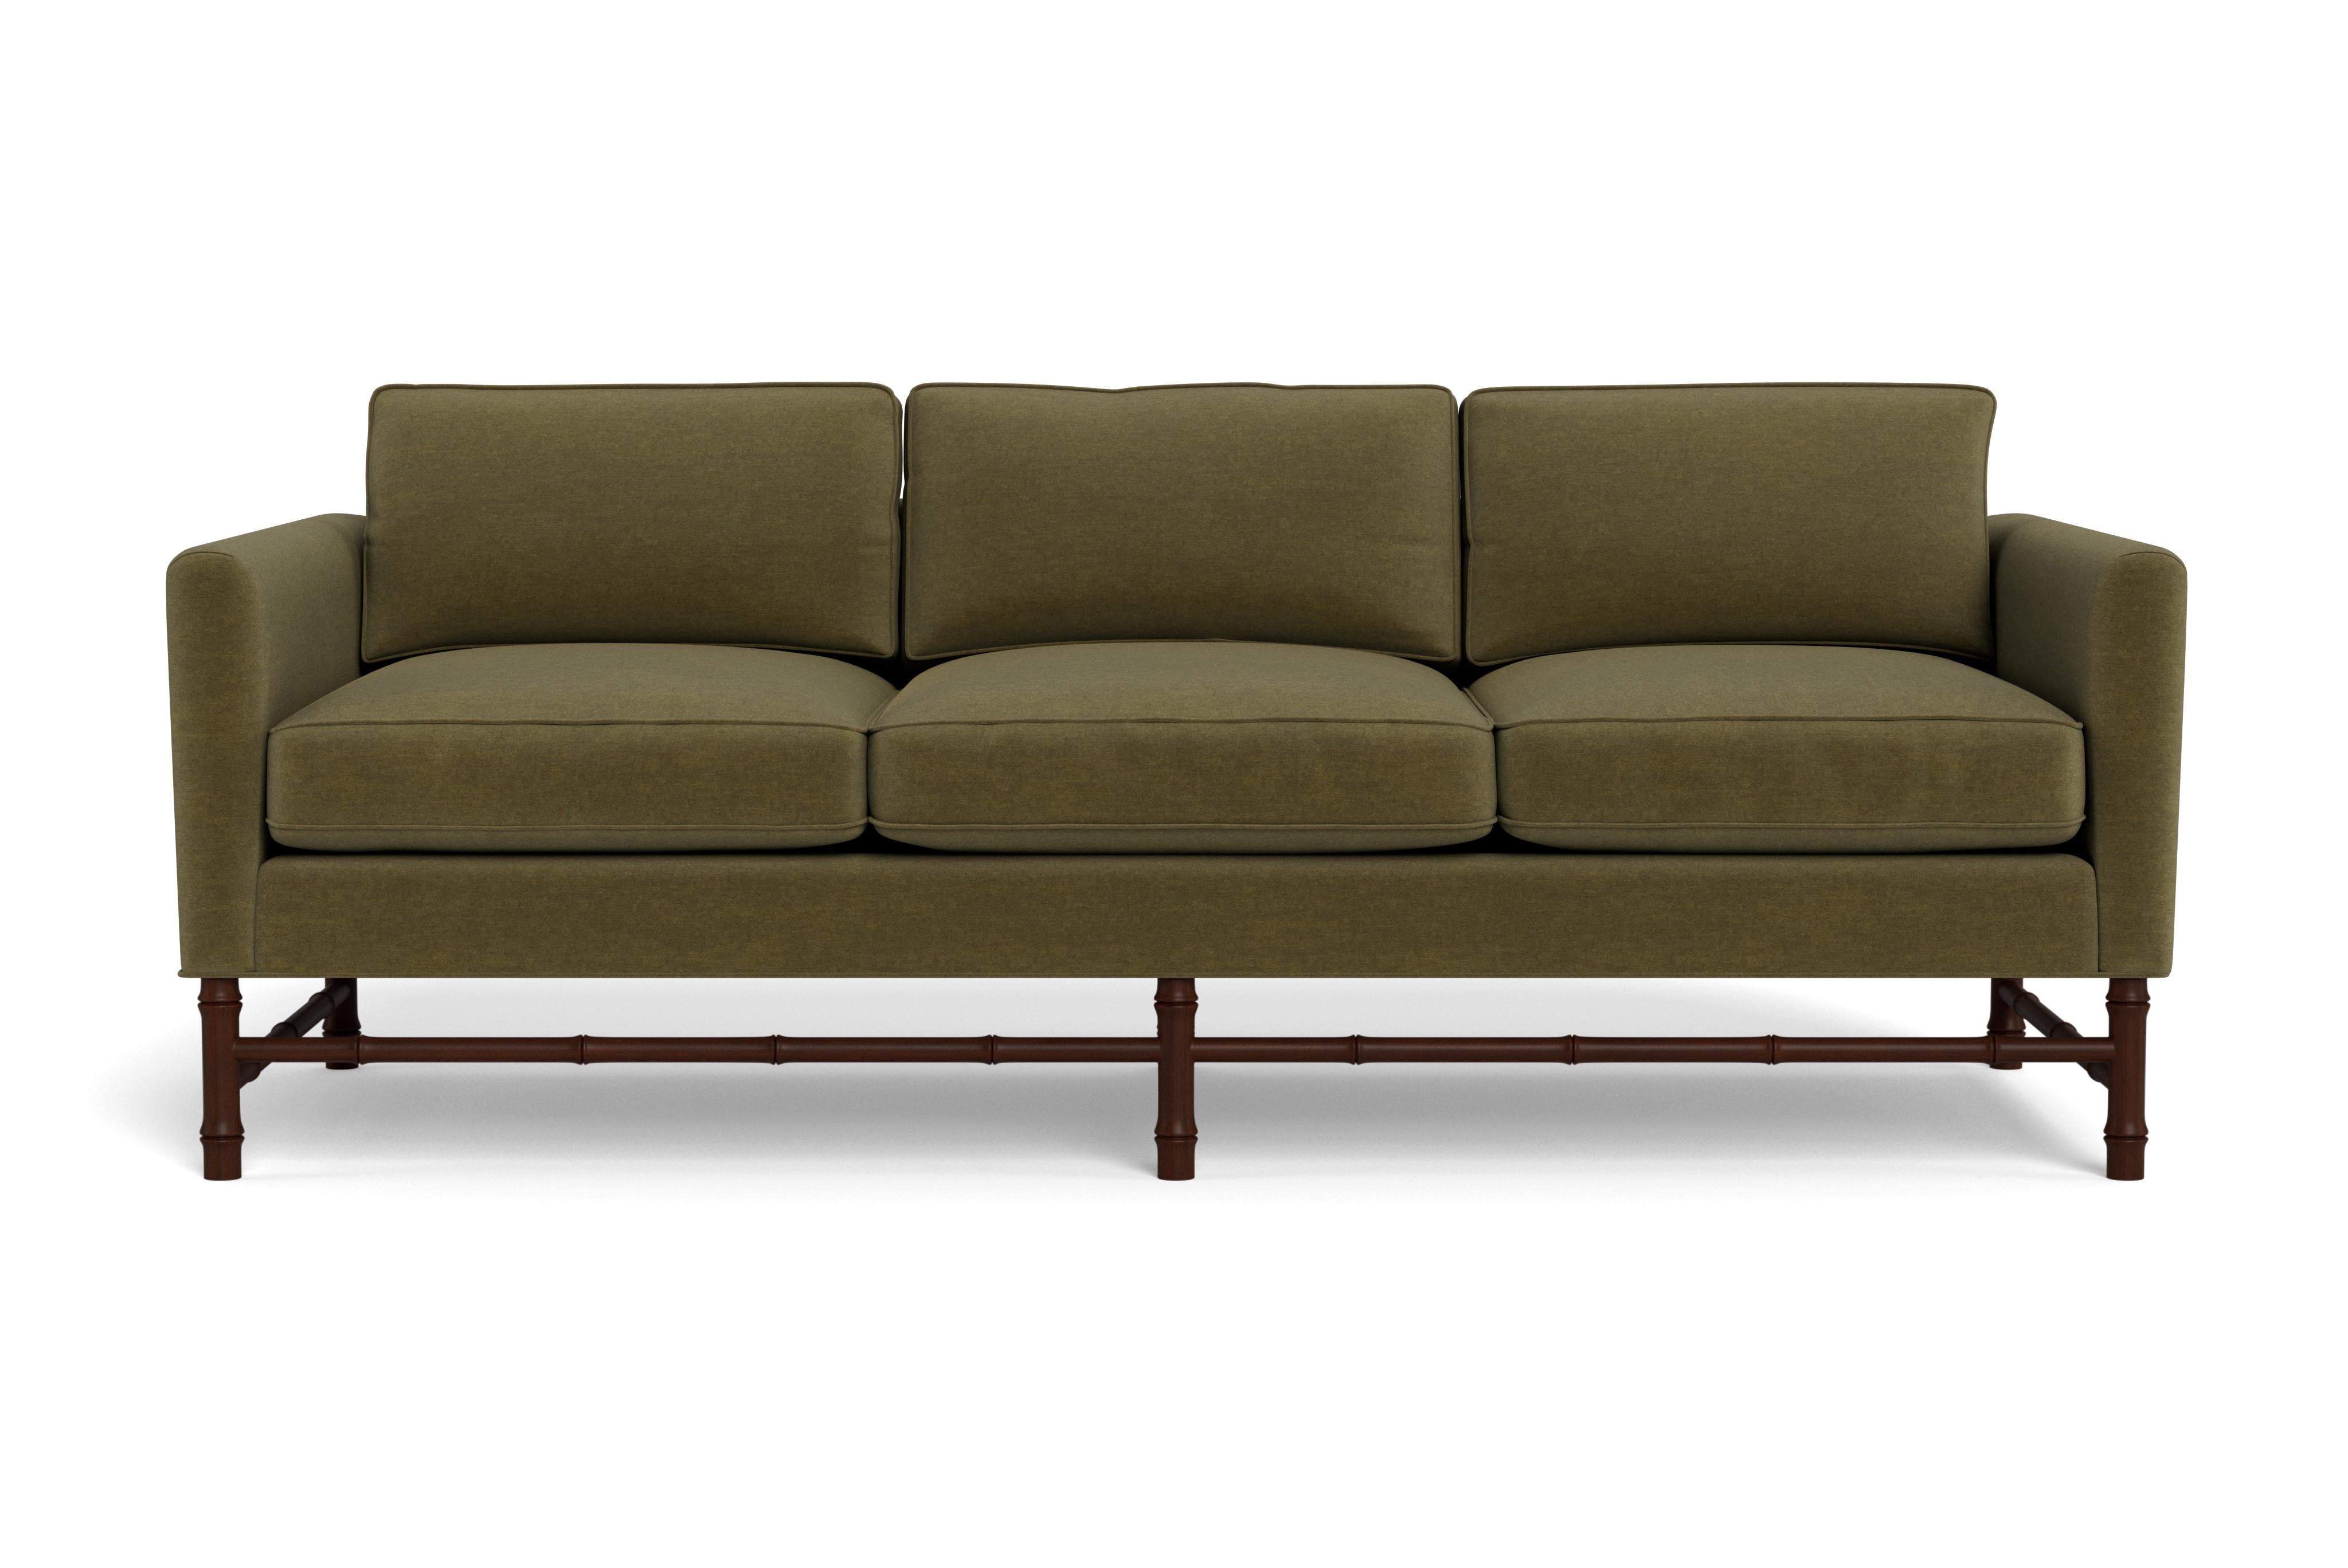 Dieses bequeme Sofa hat klassische, klare Linien, aber der Bambusfuß verleiht ihm Persönlichkeit. Perfekt für jeden Einrichtungsstil.  Auf Bestellung mit einem mahagonigebeizten Untergestell und unserem Moos-Performance-Samt, einem reinigungsfähigen